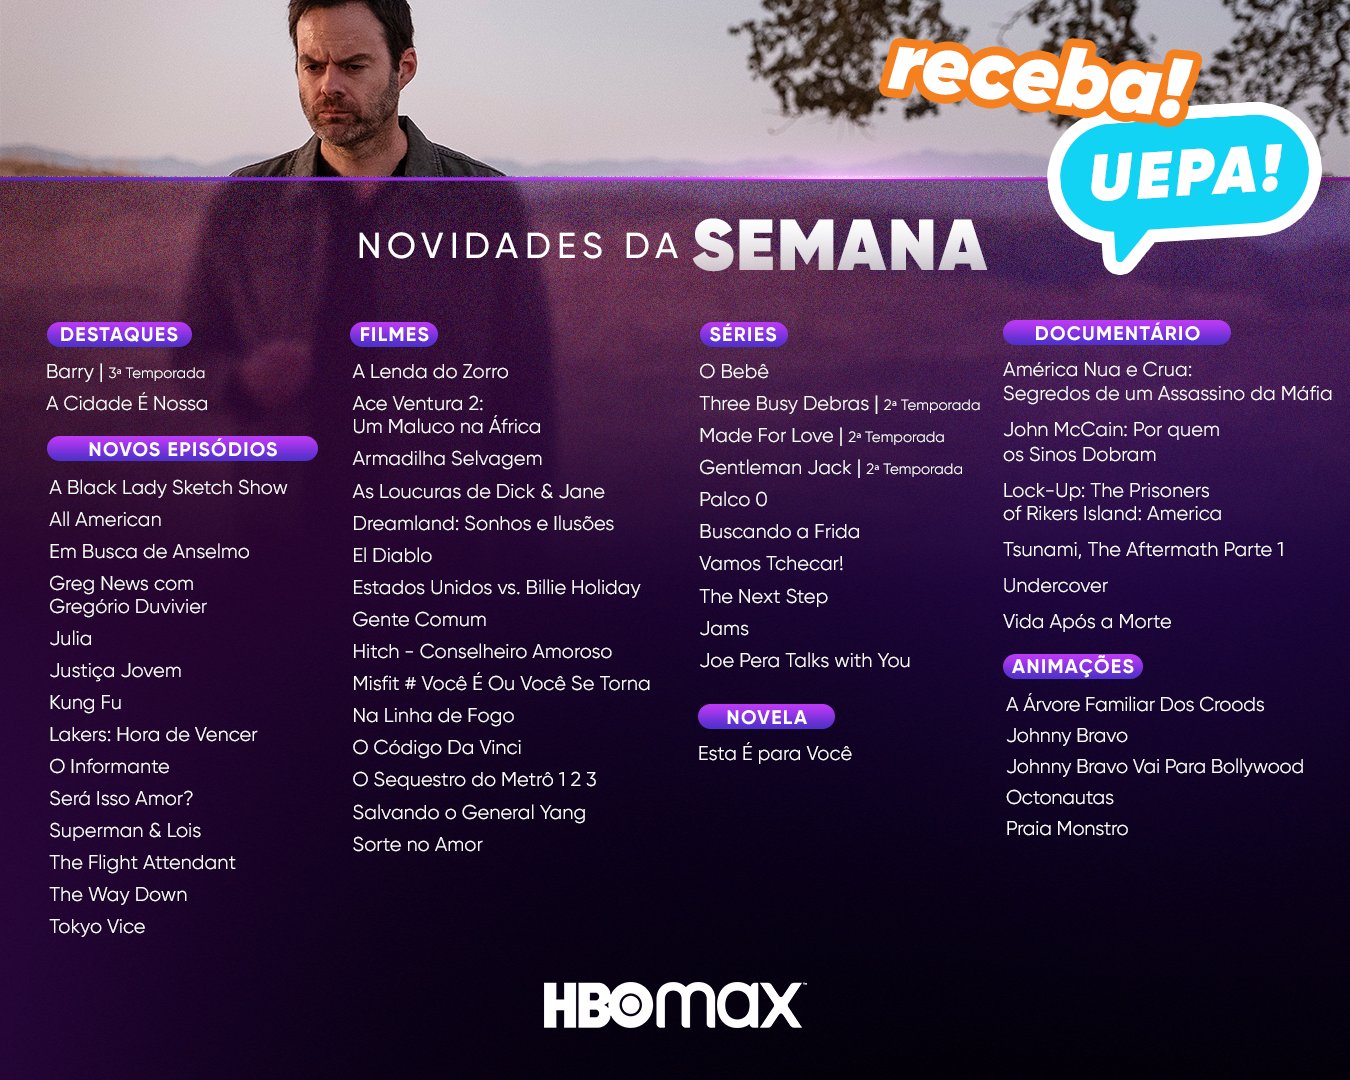 HBO Max Brasil on X: Atenção pra lista do que chegou nessa semana na HBO  Max 💃  / X